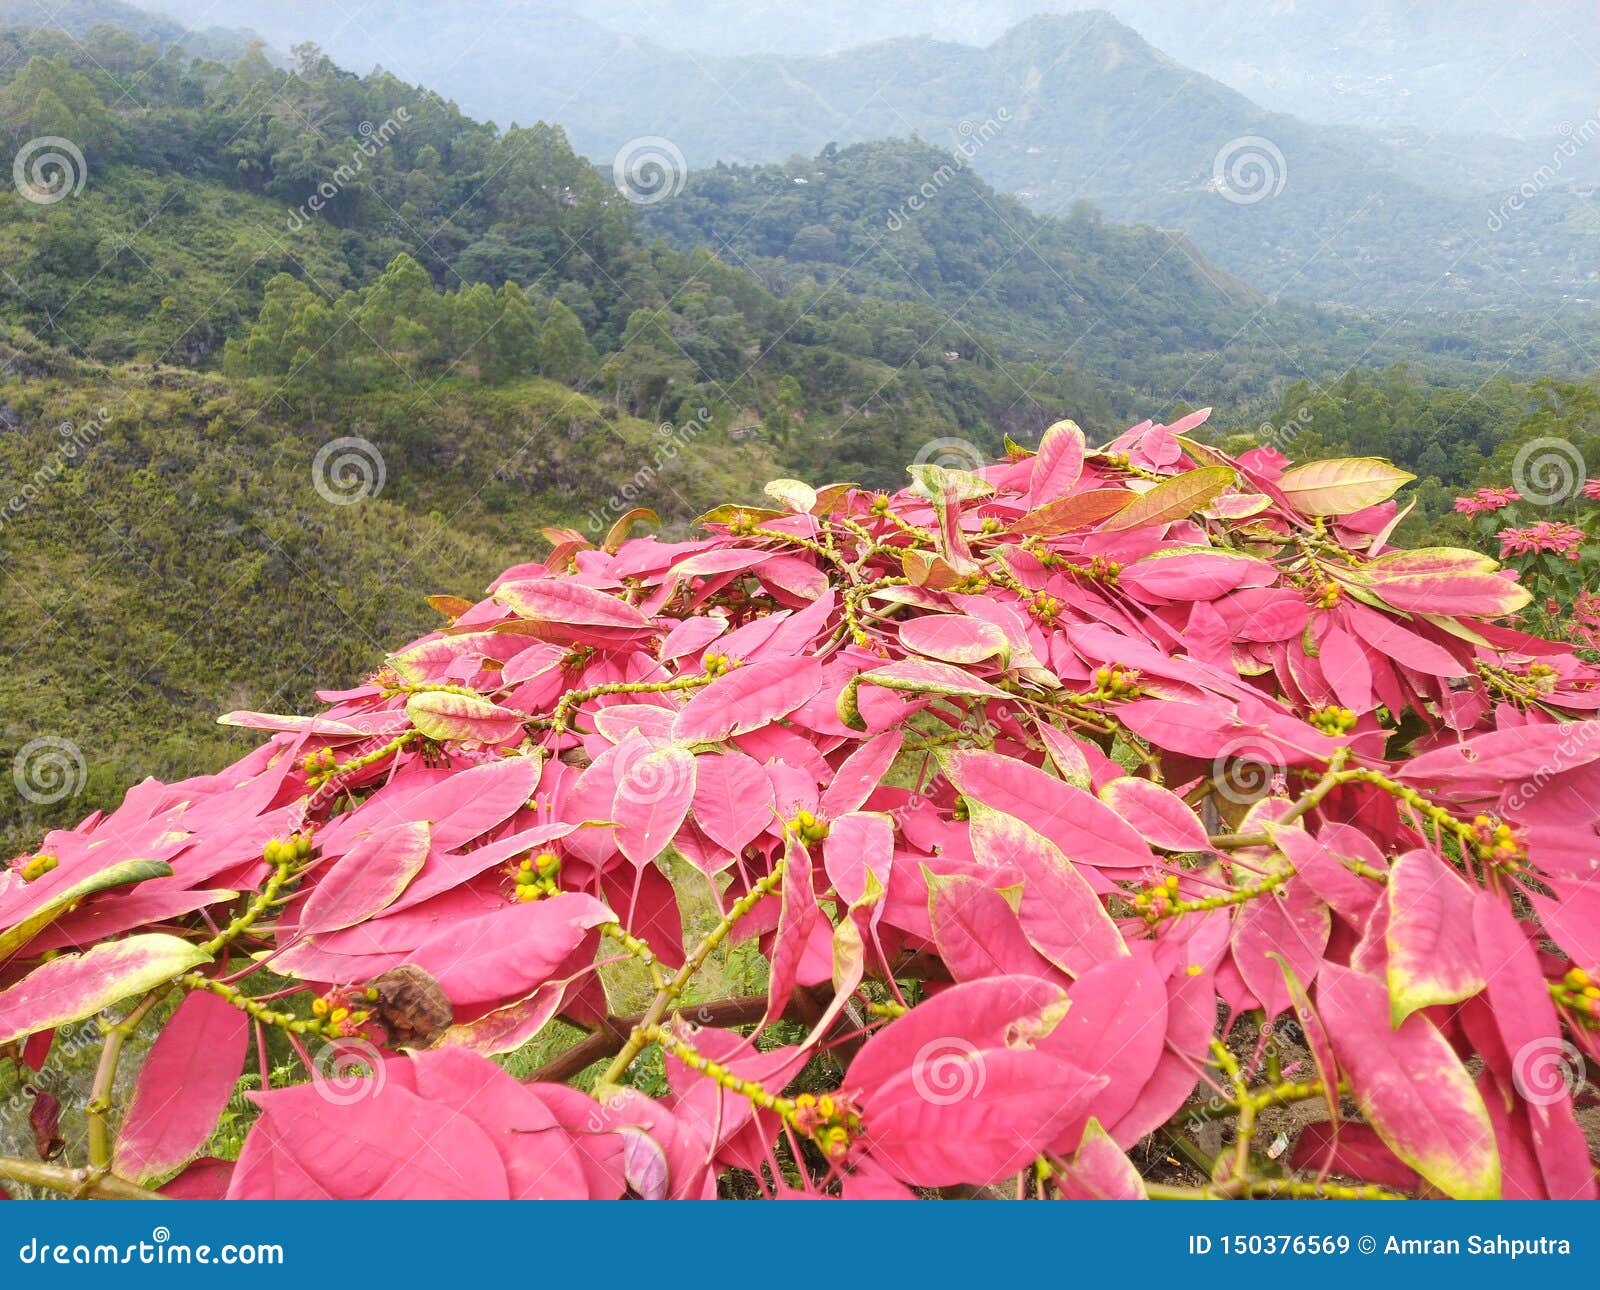 spread of pink flowers set in mount inerie manulalu bajawa